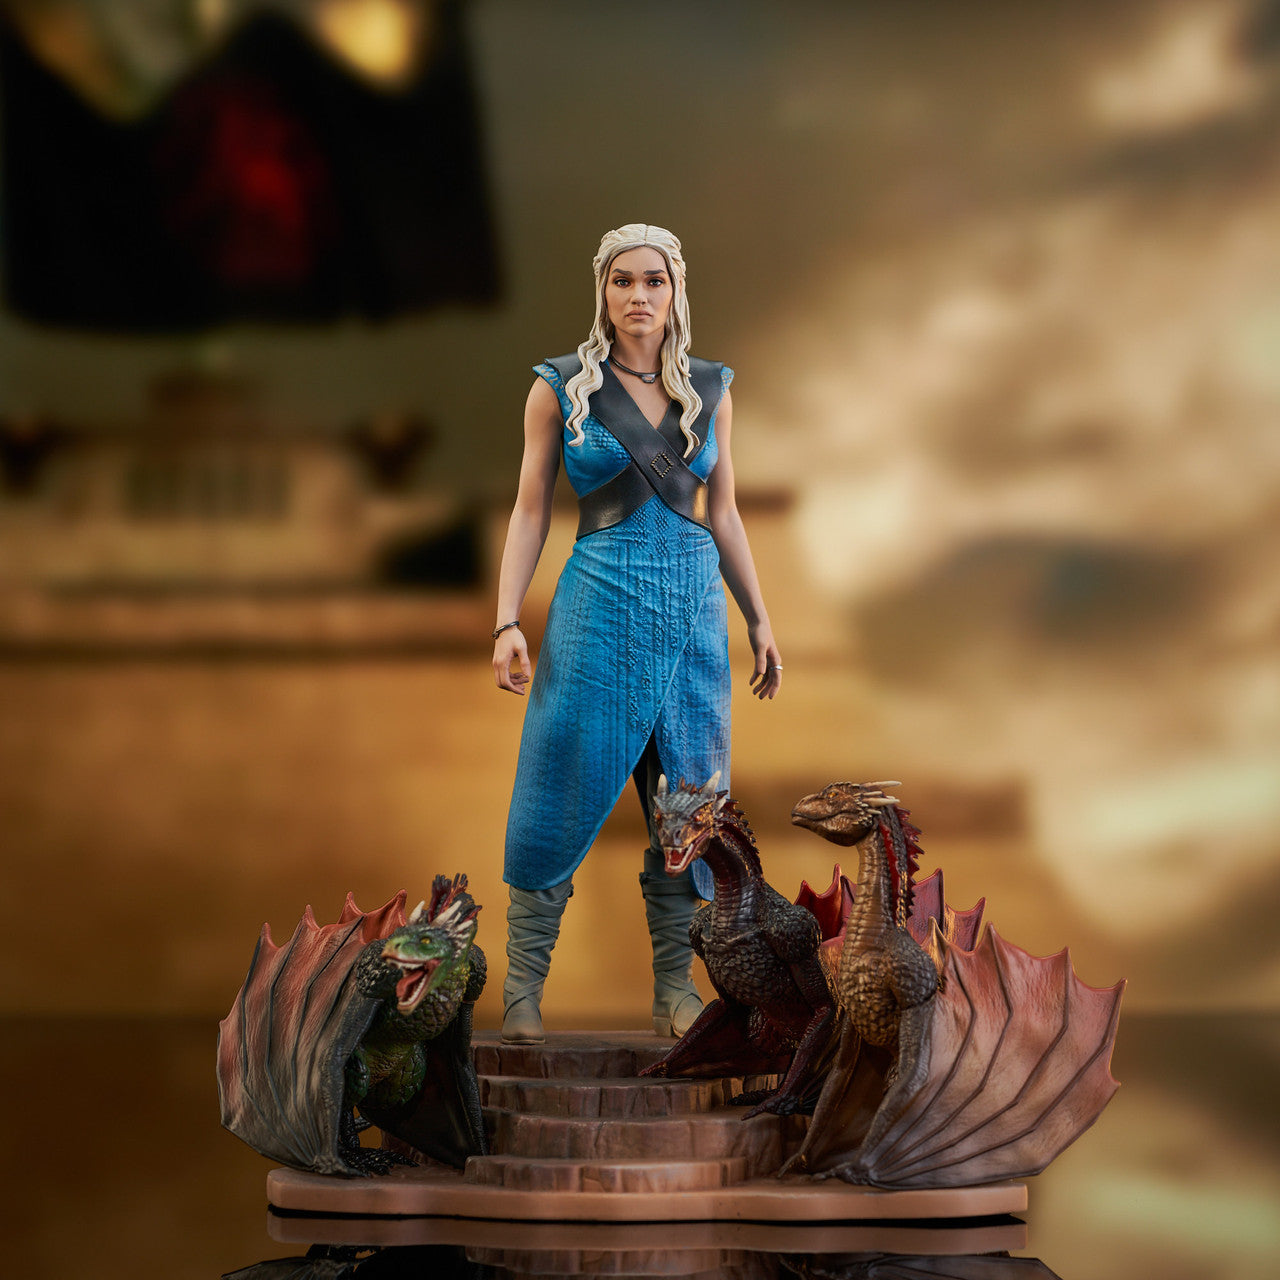 Diamond Select Toys Statue Gallery Diorama: Game Of Thrones - Daenerys Targaryen 9.5 Pulgadas